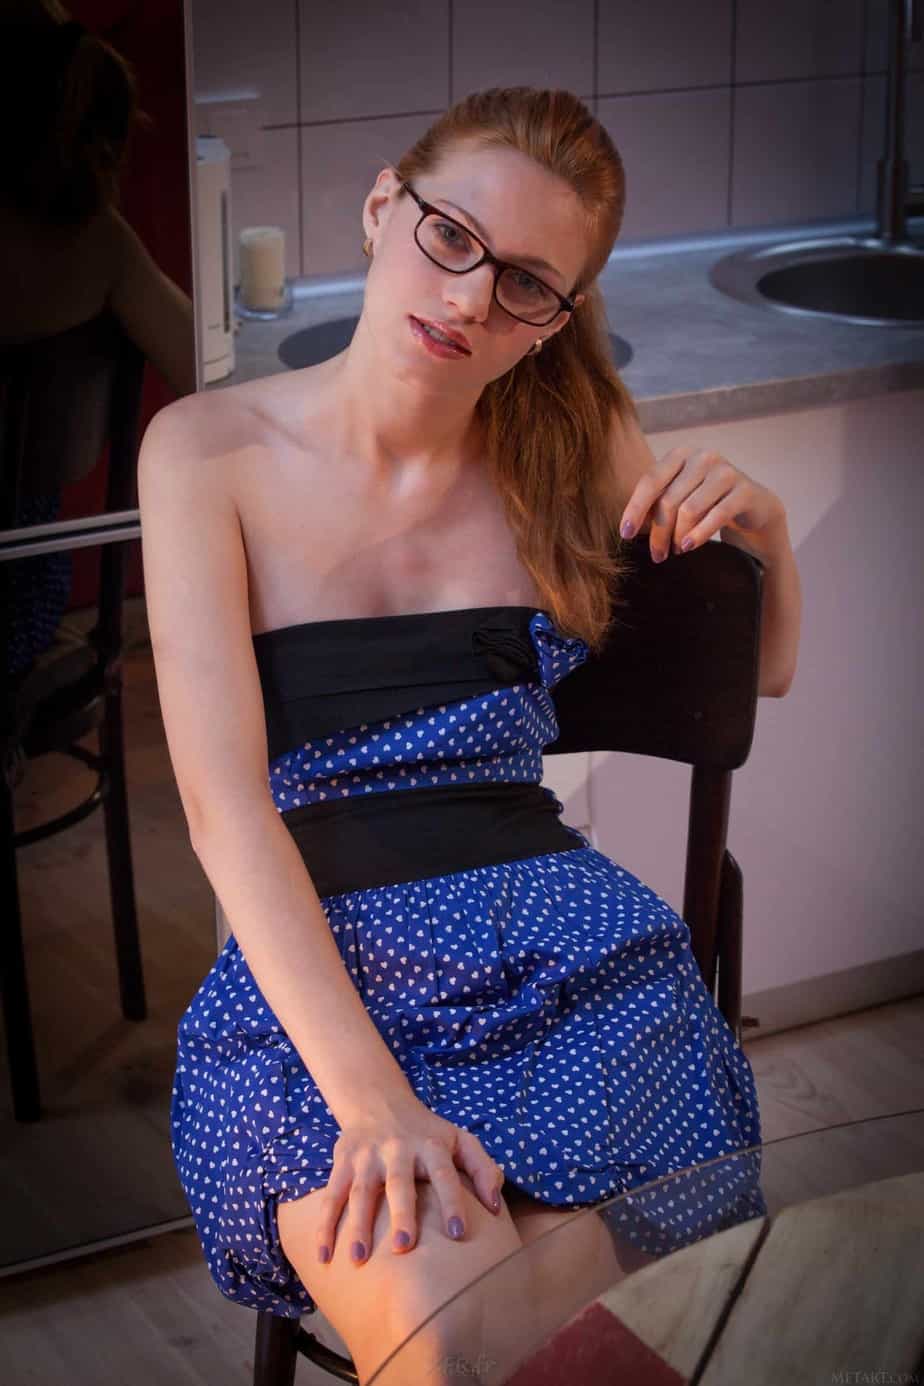 Rachel jolie rousse sexy et ses photos intimes en haute qualité